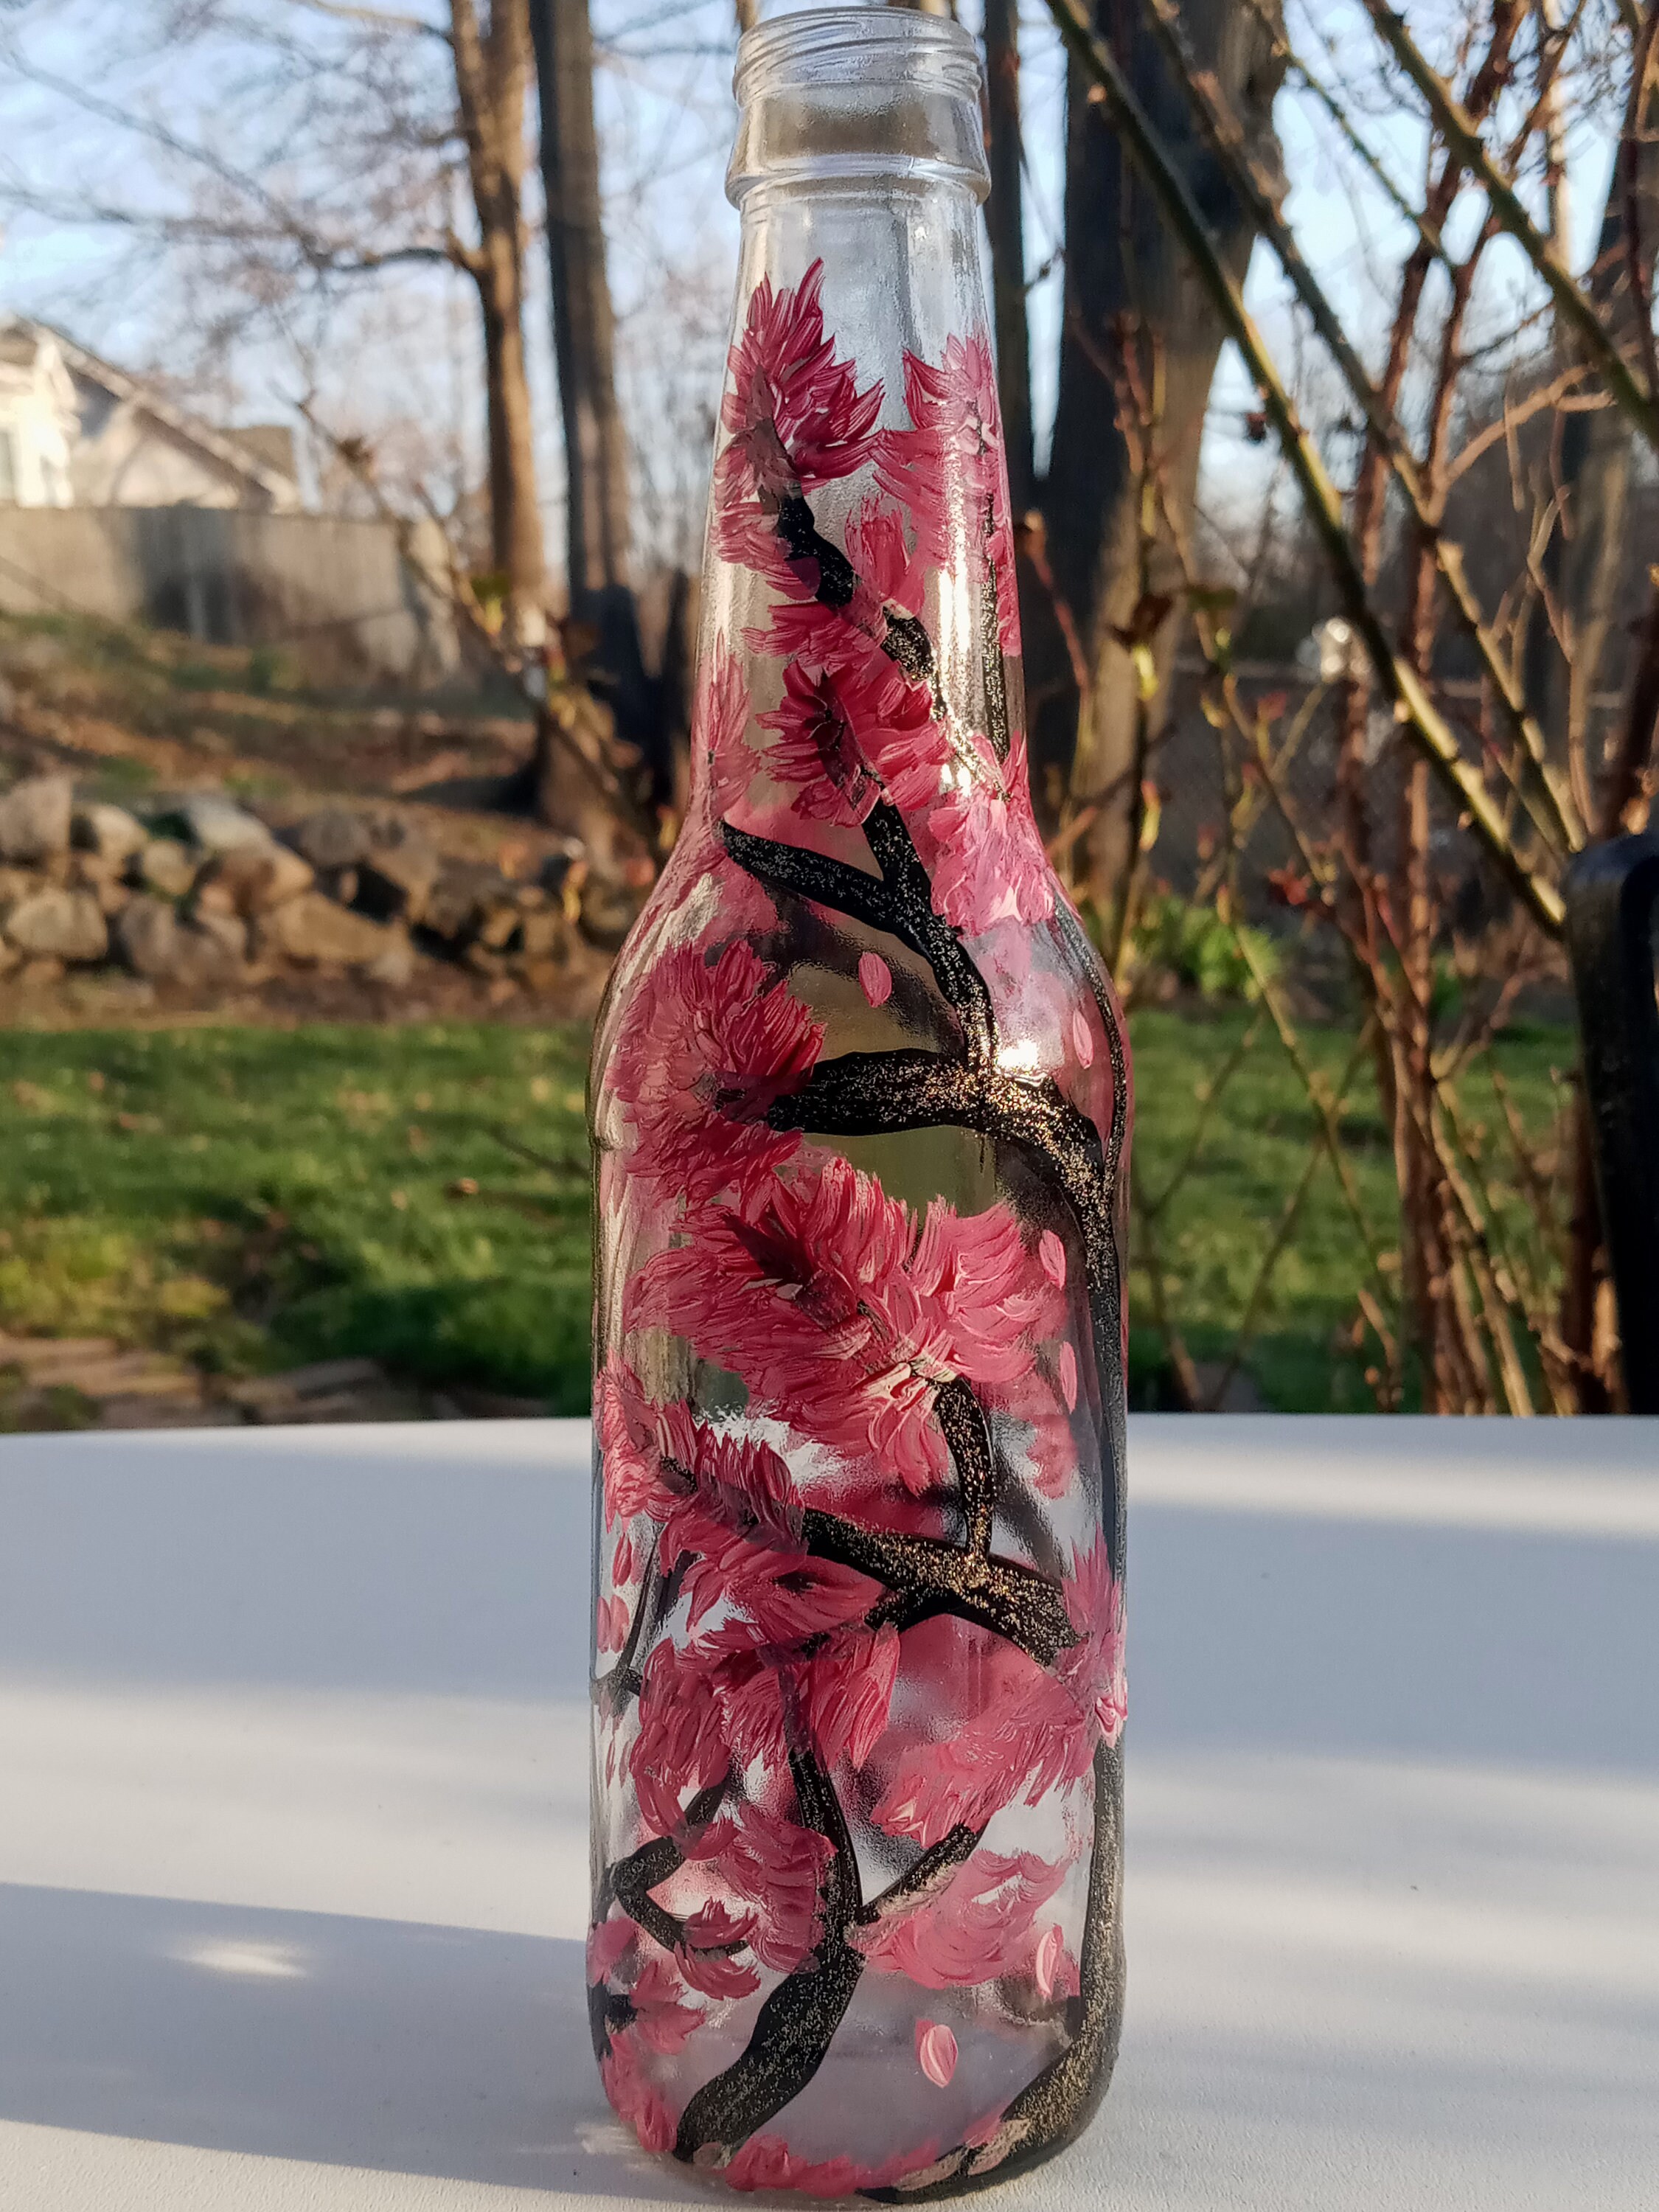 Upcycled Hand-Painted Decorative Soda Bottle